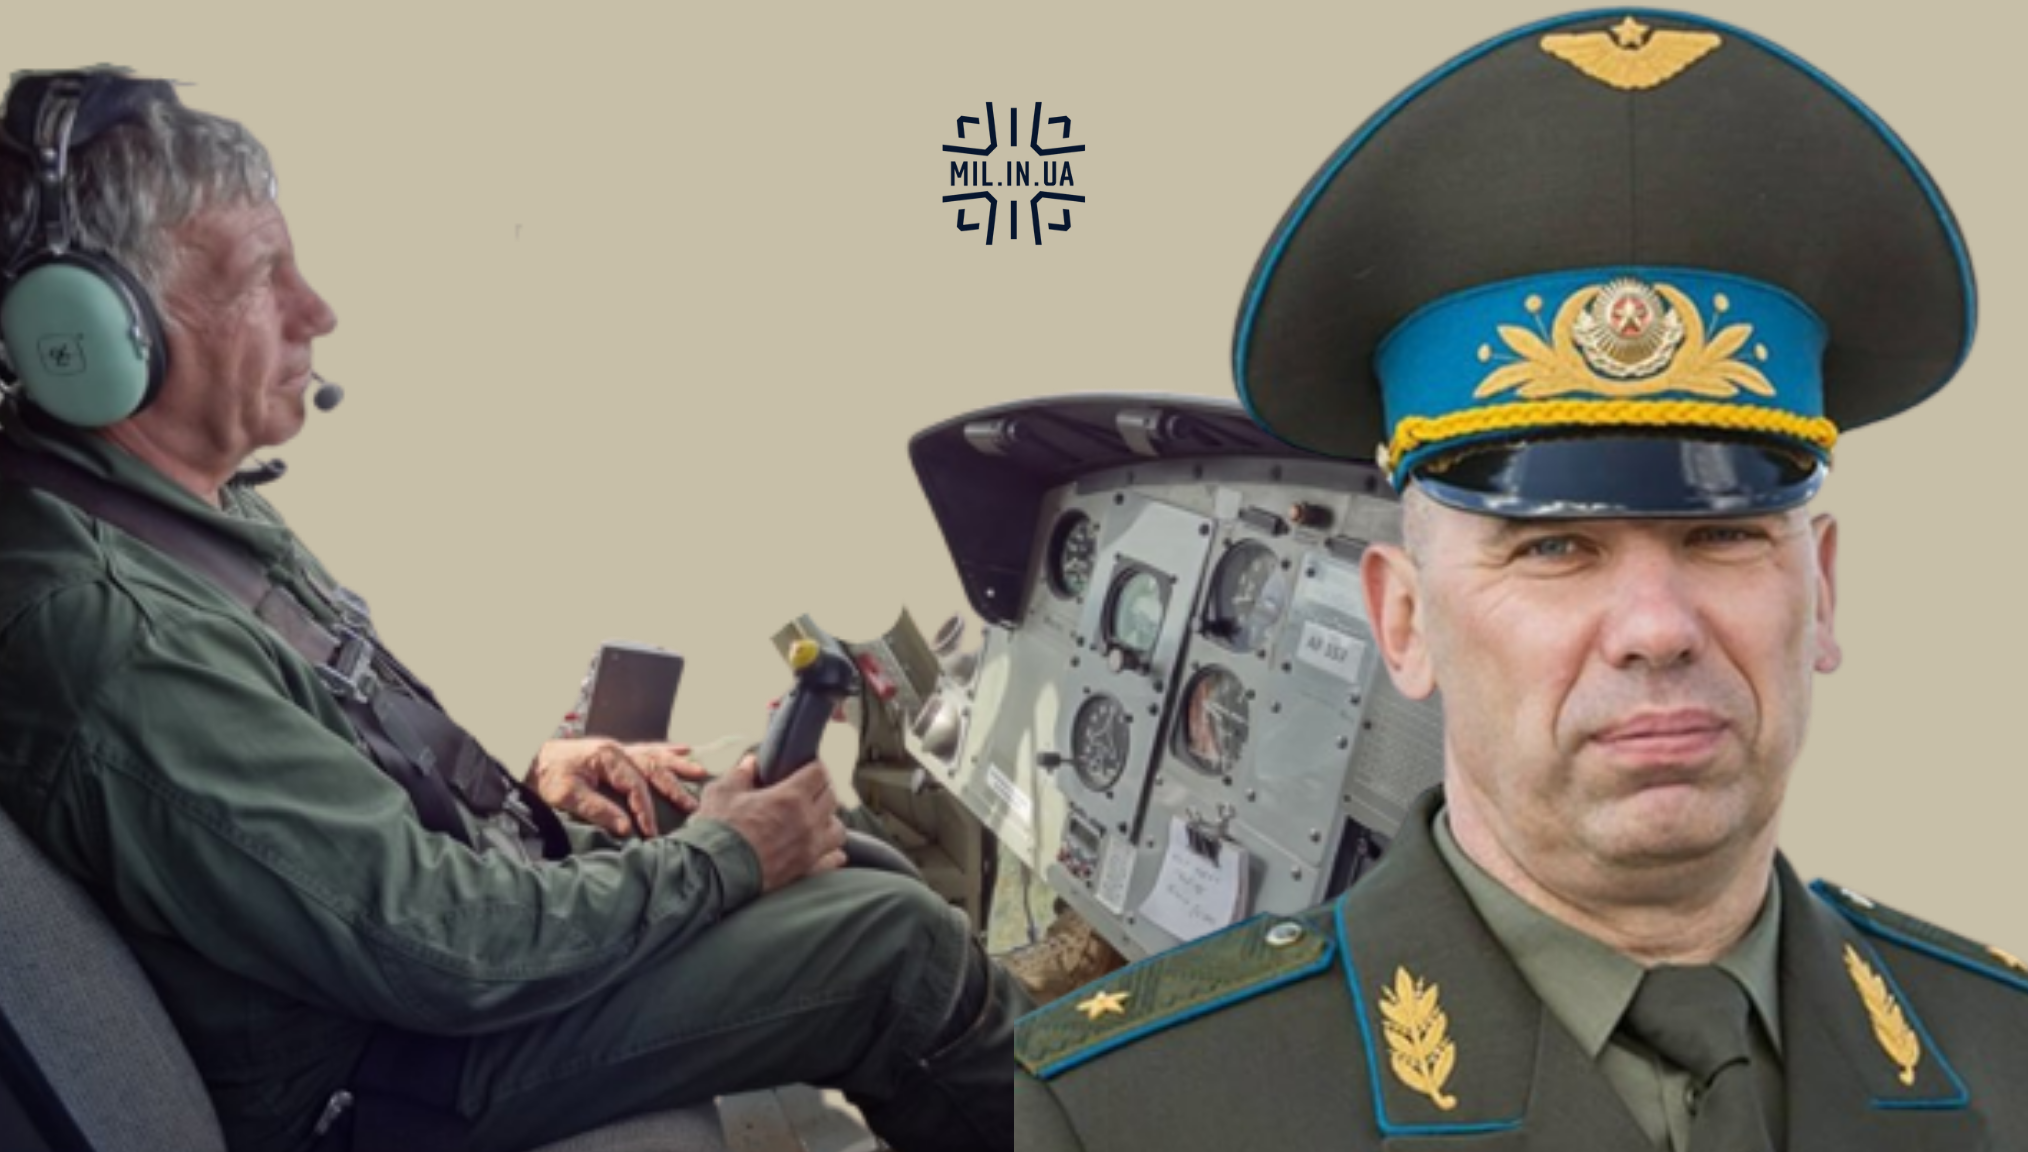 A fehérorosz katonai nyugdíjasok úgy repülnek és halnak meg, mint a Wagner-pilóták Ukrajnában